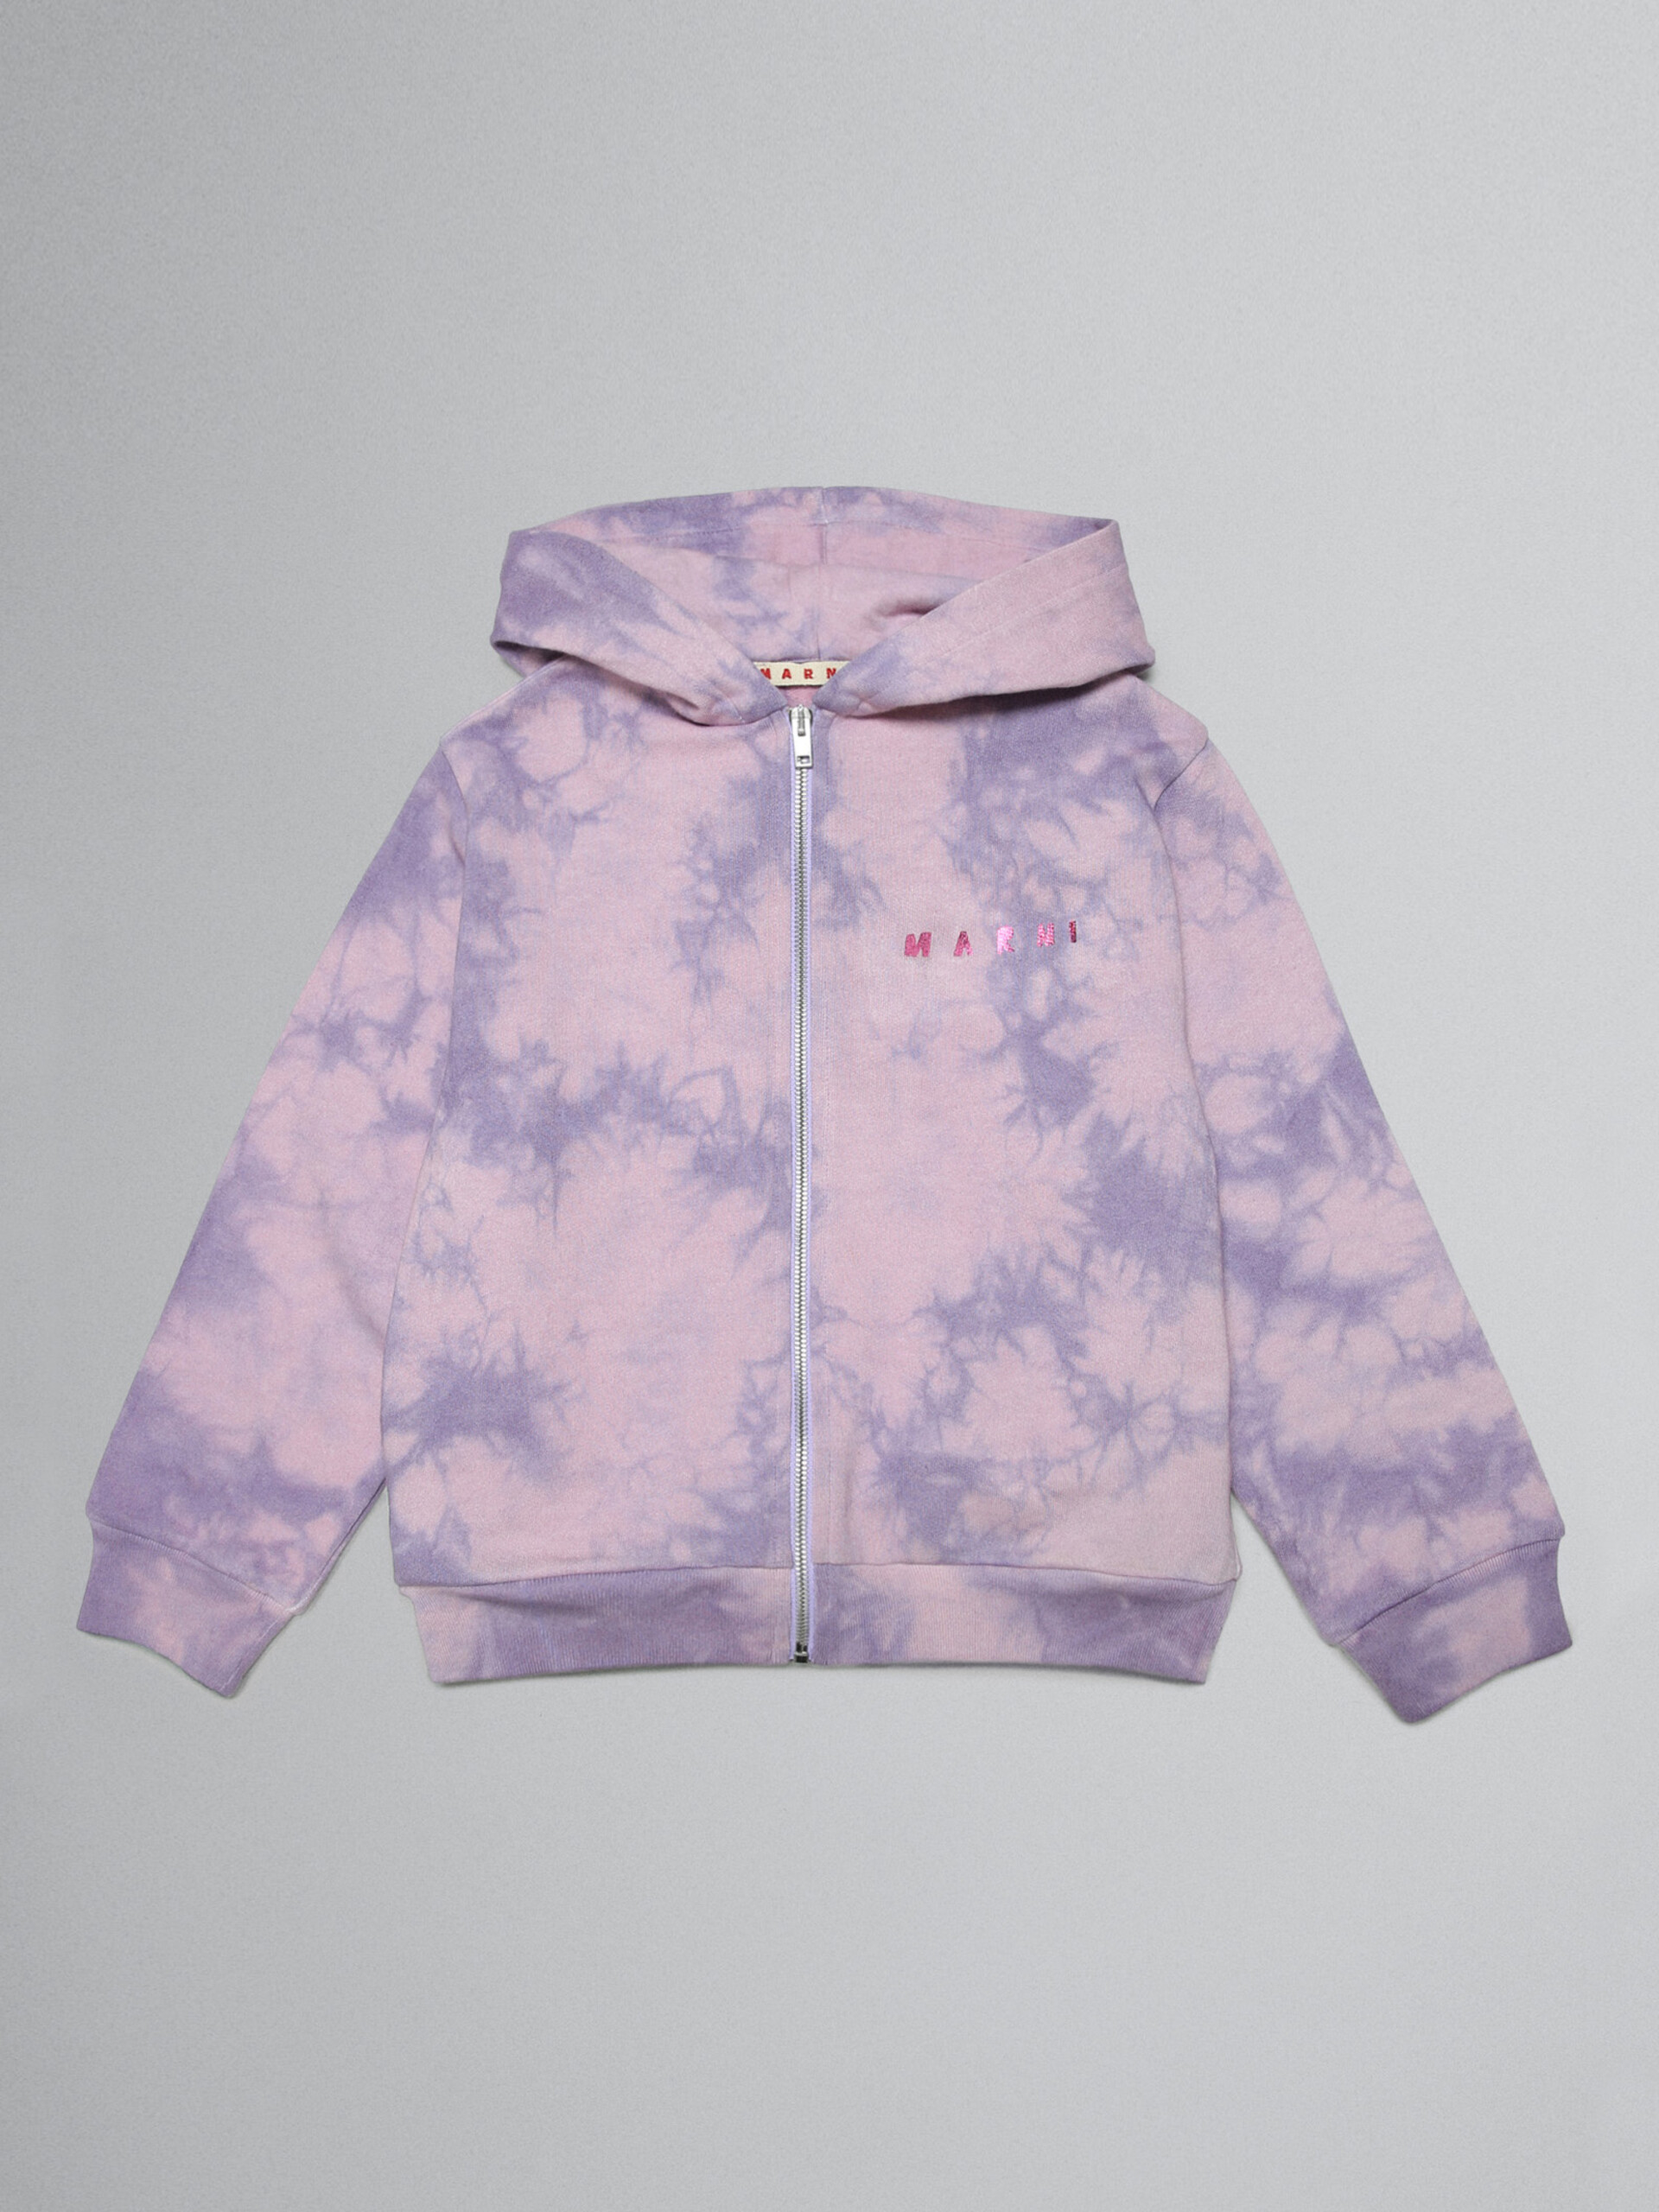 Lavender tie-dye hoodie with metallic logo prints - Sweaters - Image 1